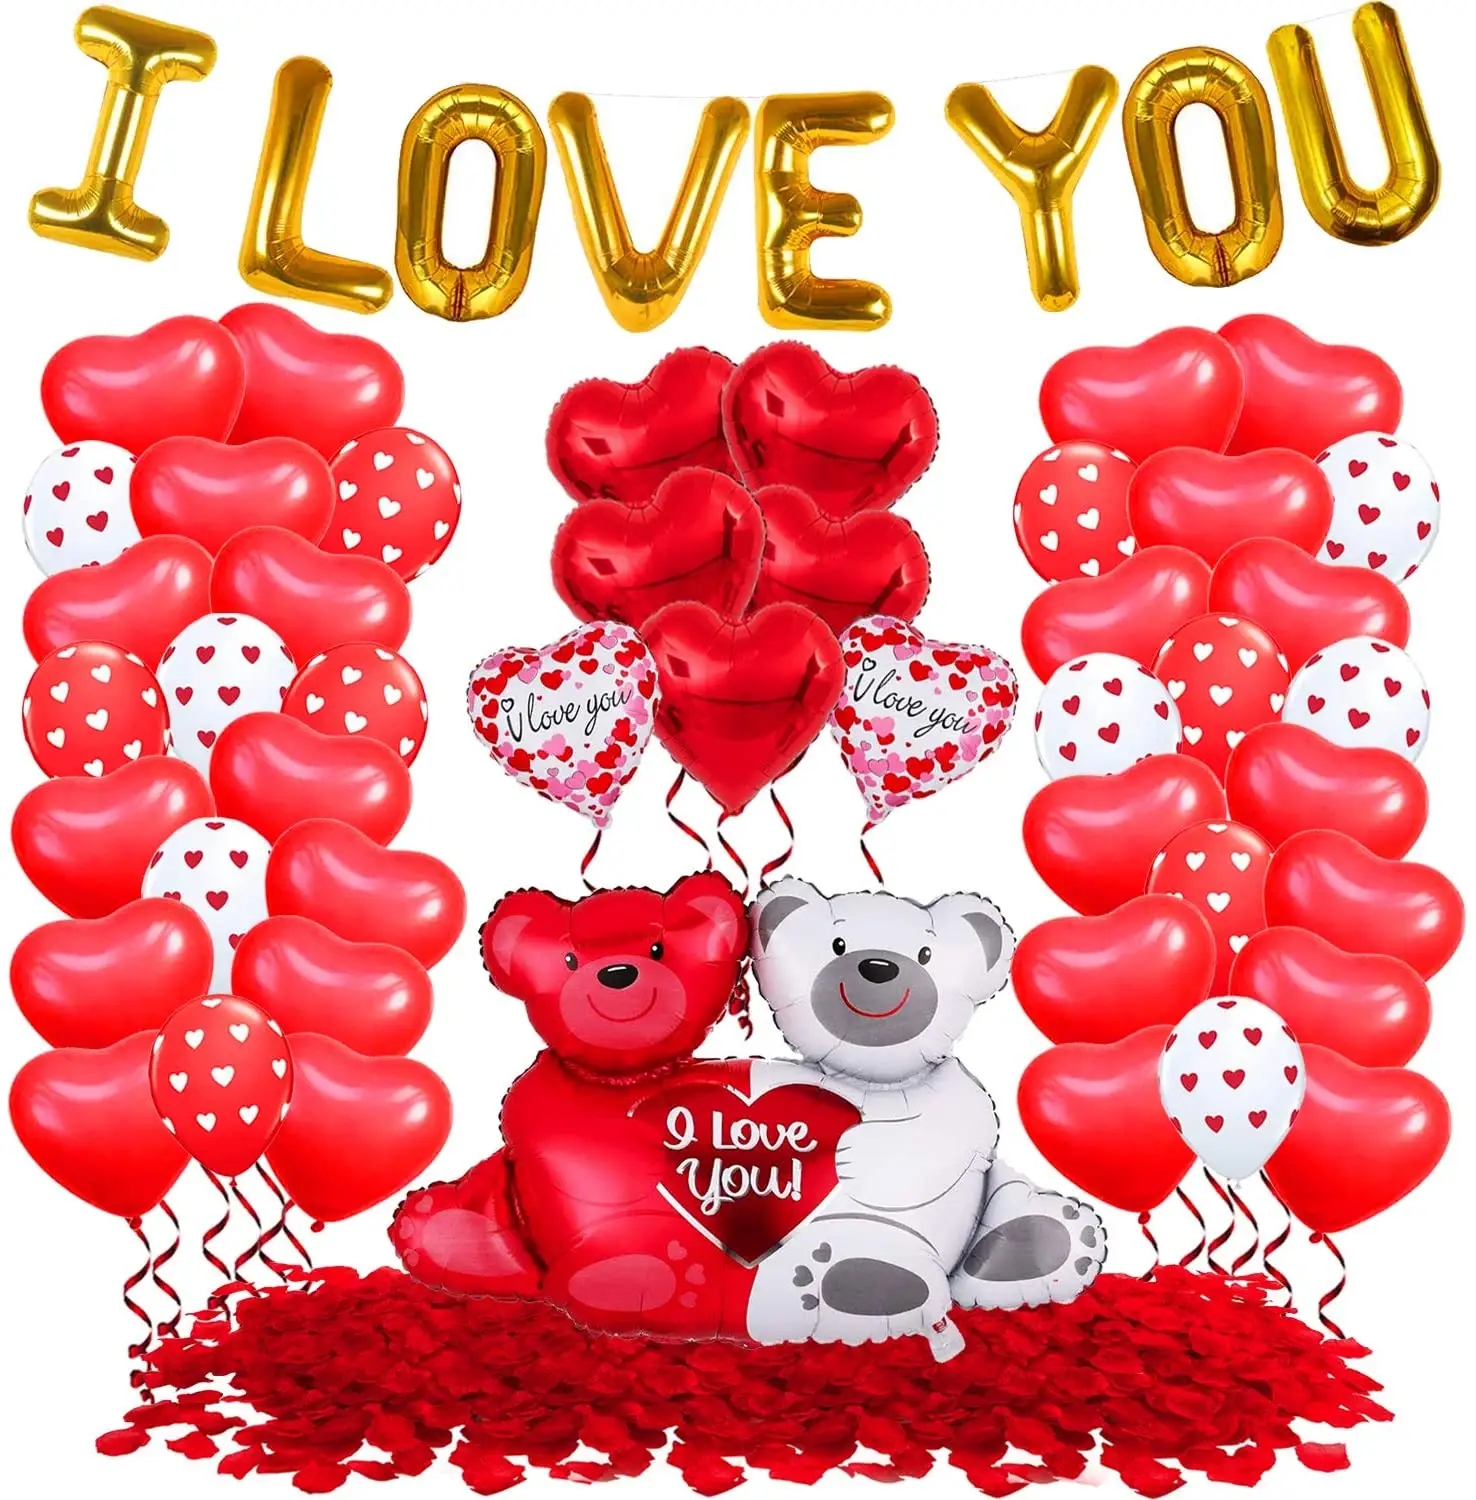 Ich liebe dich Luftballons Rote Herz Luftballons Set Rote Rosen blätter für Jubiläum Romantische Dekorationen Valentinstag <span class=keywords><strong>Ballon</strong></span>